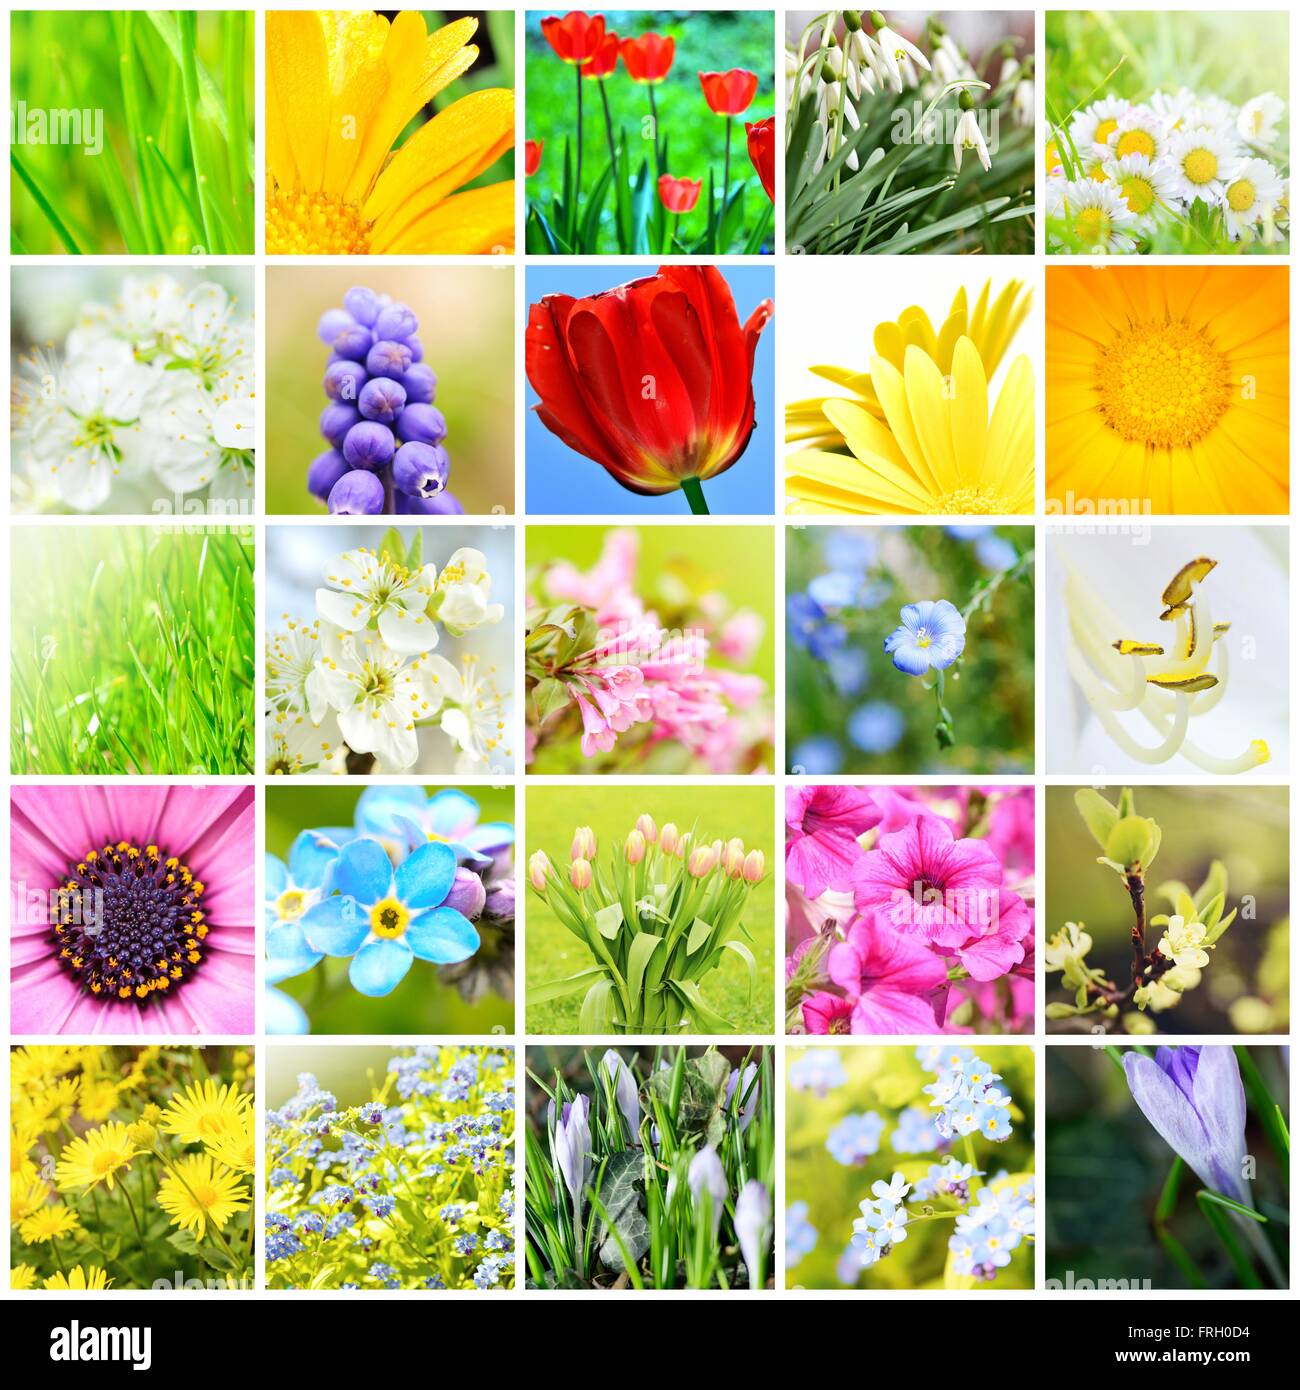 Frühling natürlich abstrakt Collage mit Pflanzen und Blumen im Garten. Ein Frühjahrs-Kollektion. Hintergrund Collage. Frühling Thema collage Stockfoto